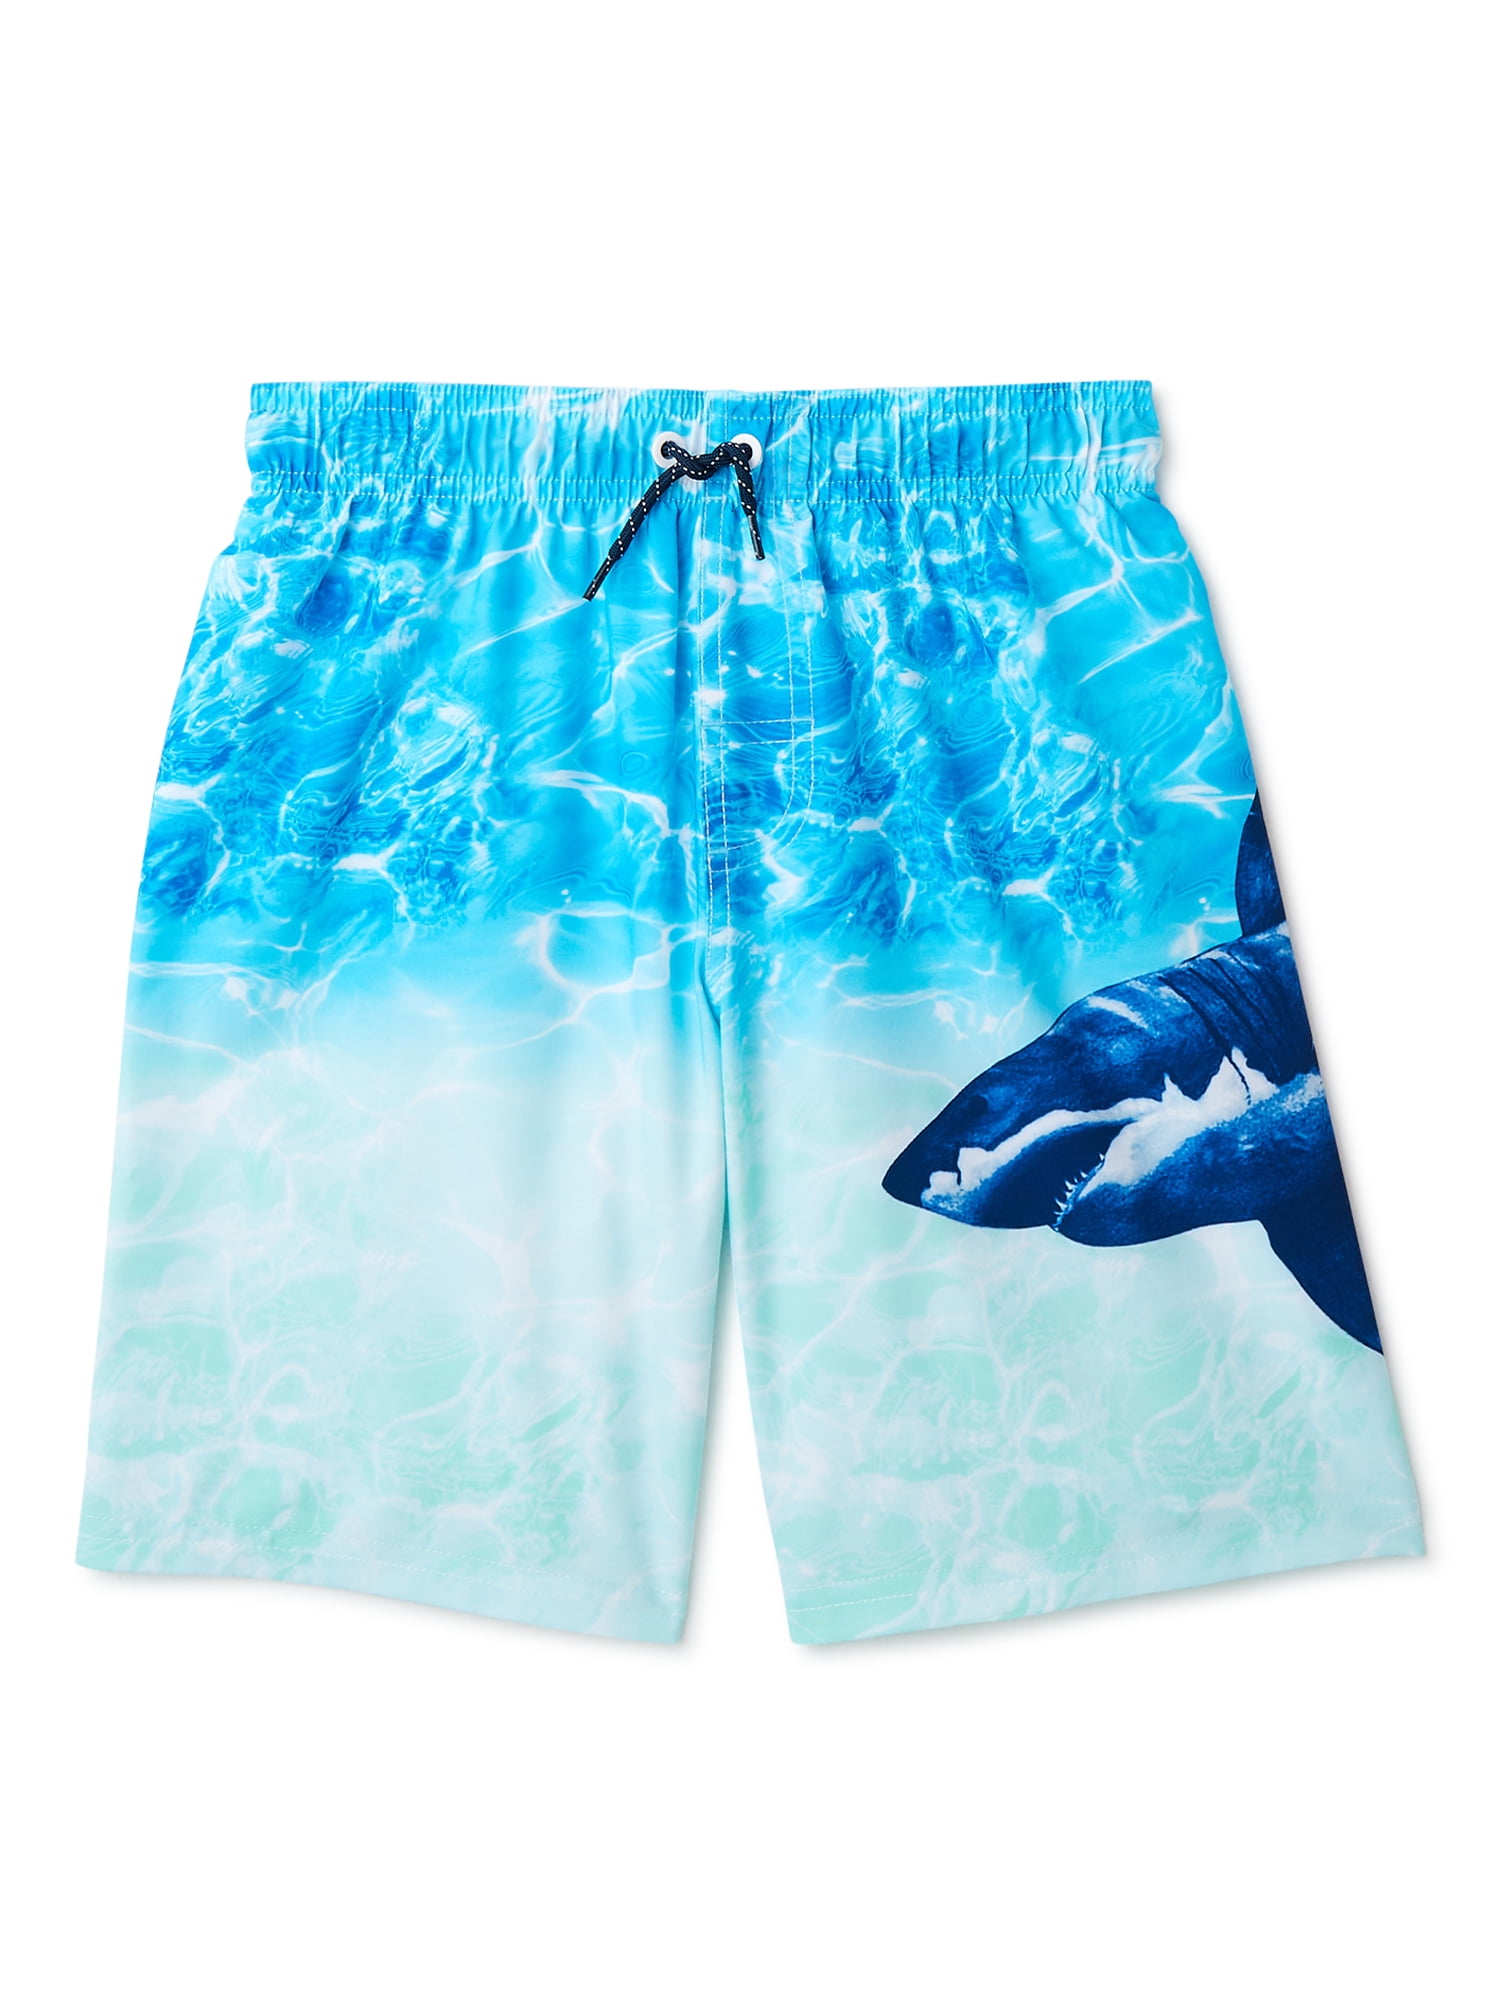 Horizon-t Beach Shorts American Dinosaur Flag Mens Fashion Quick Dry Beach Shorts Cool Casual Beach Shorts